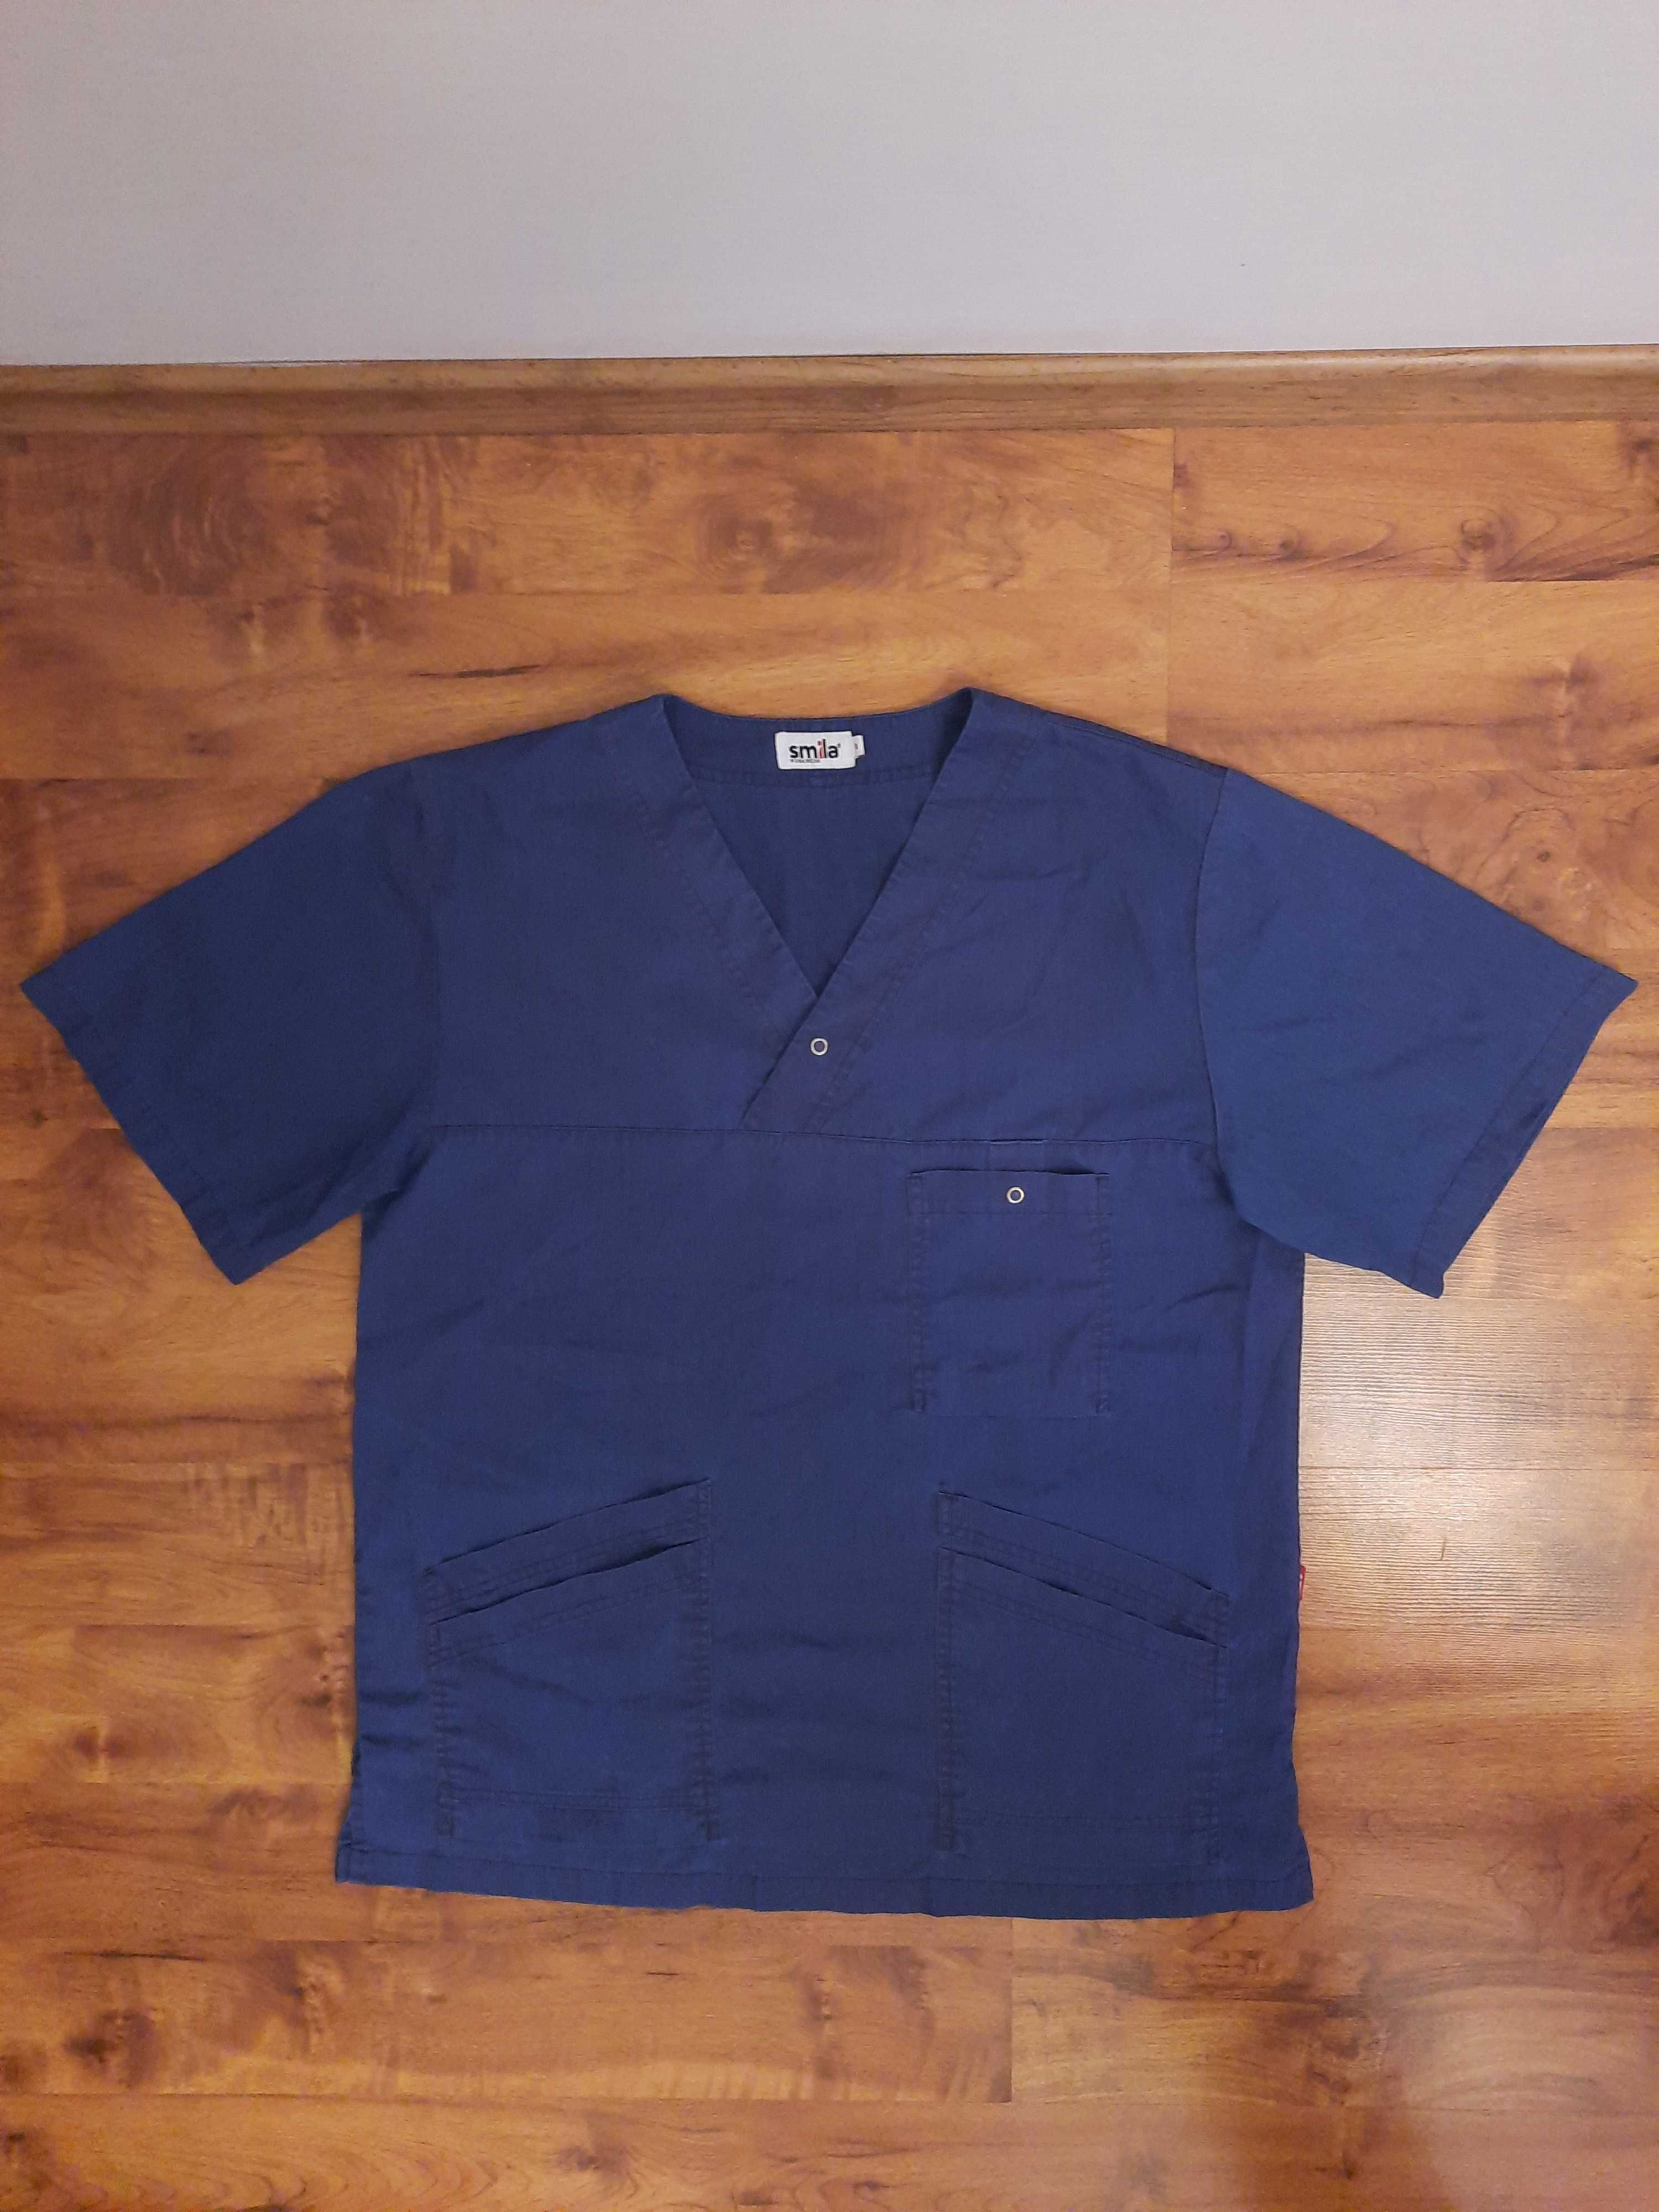 Granatowa koszulka pielęgniarska żakiet Smila rozmiar S